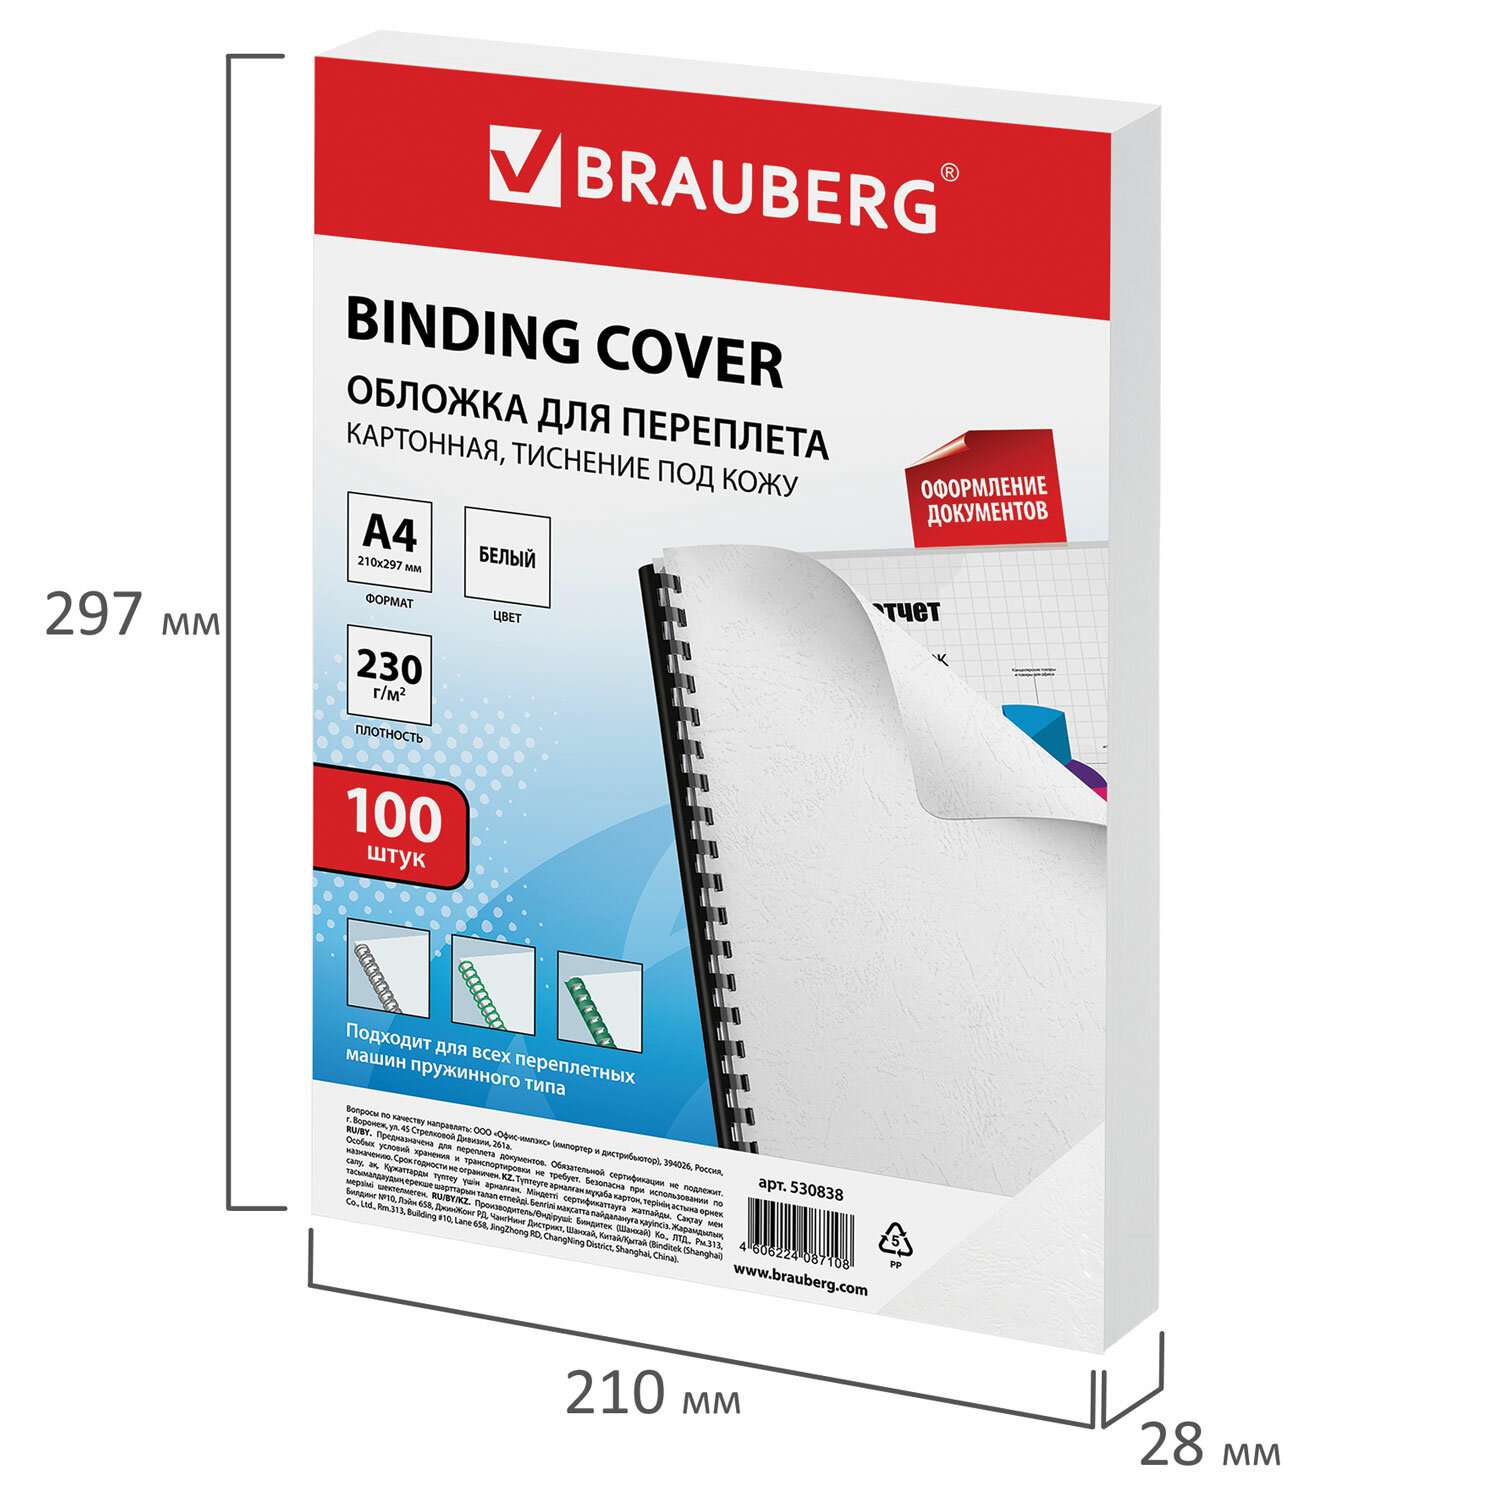 Обложки для переплета Brauberg картонные А4 набор 100 штук тиснение под кожу белые - фото 7